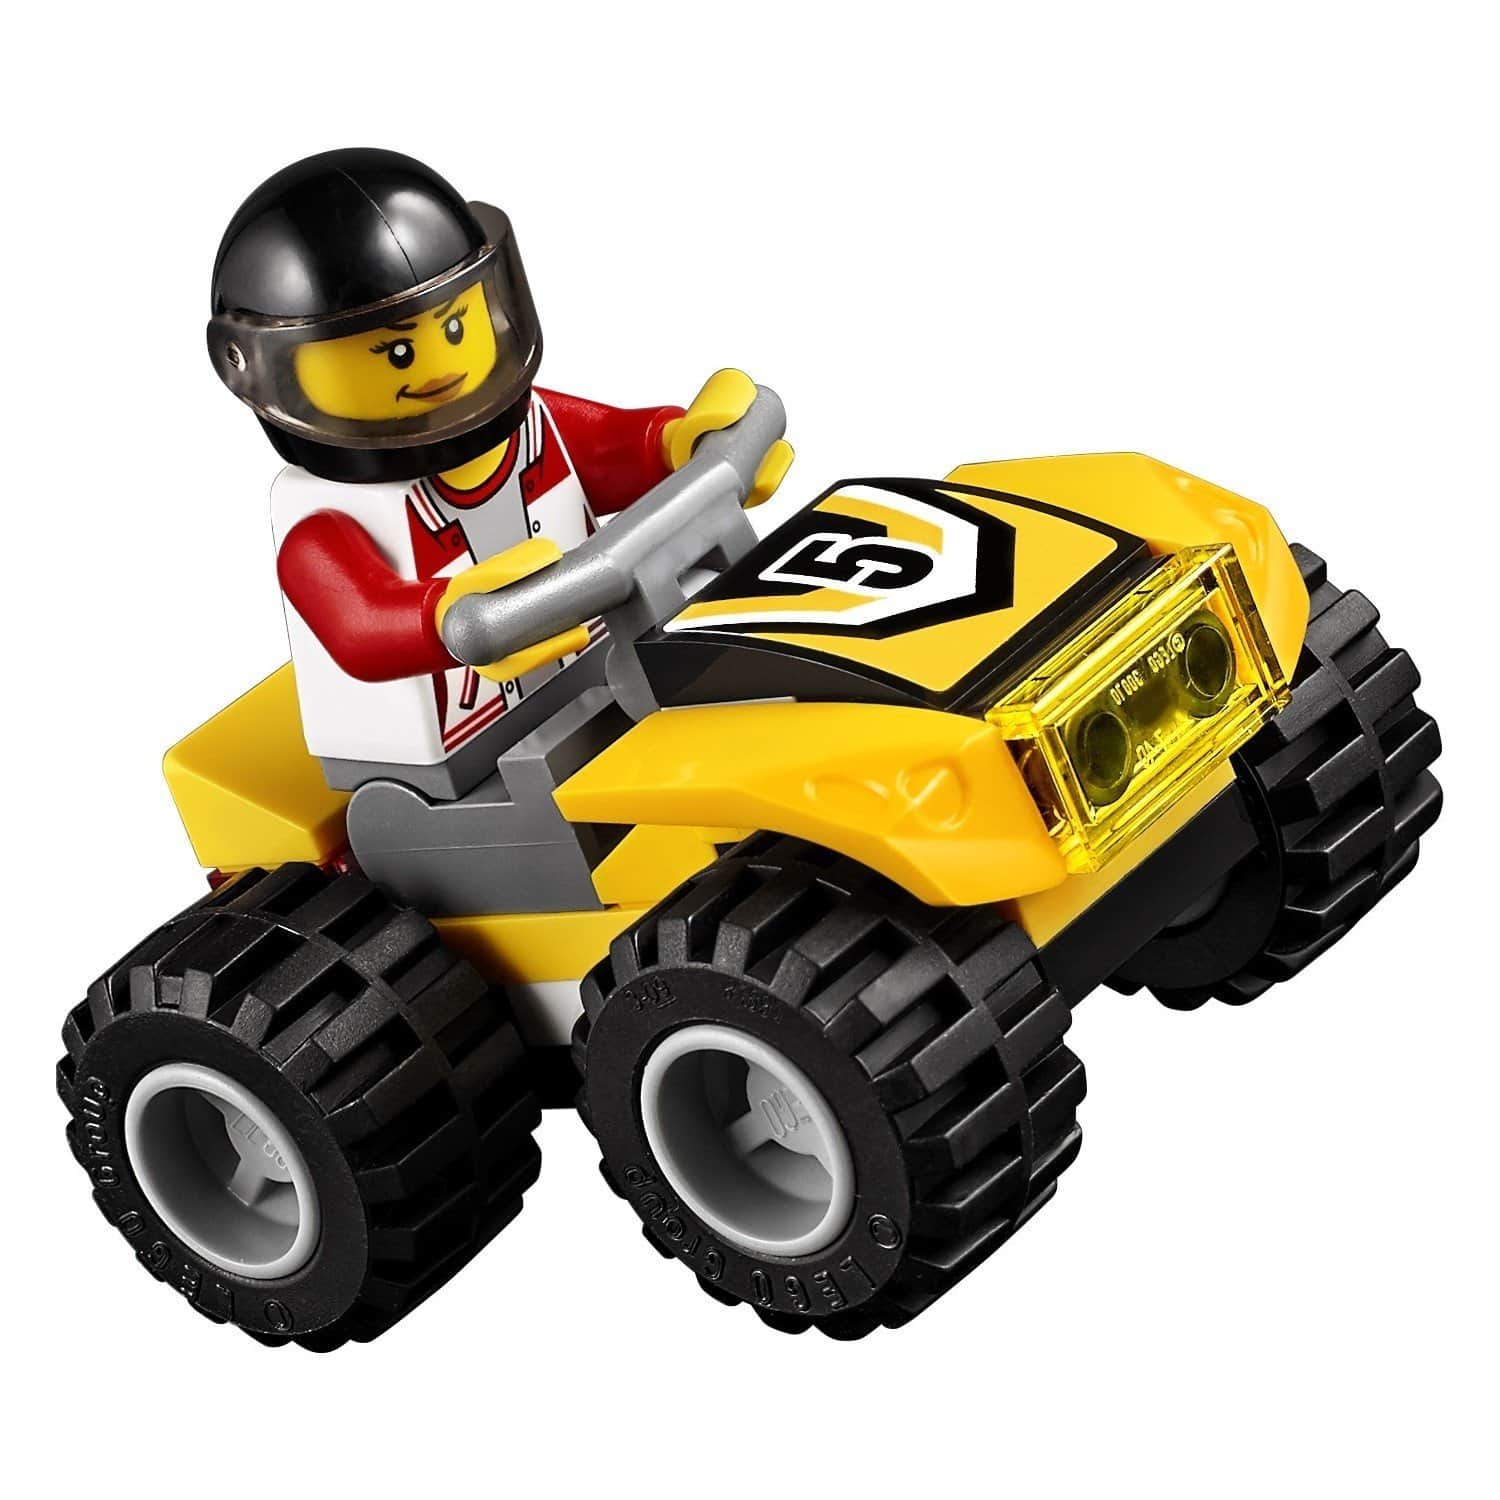 Конструктор LEGO City 60148 Гоночная команда квадроциклов